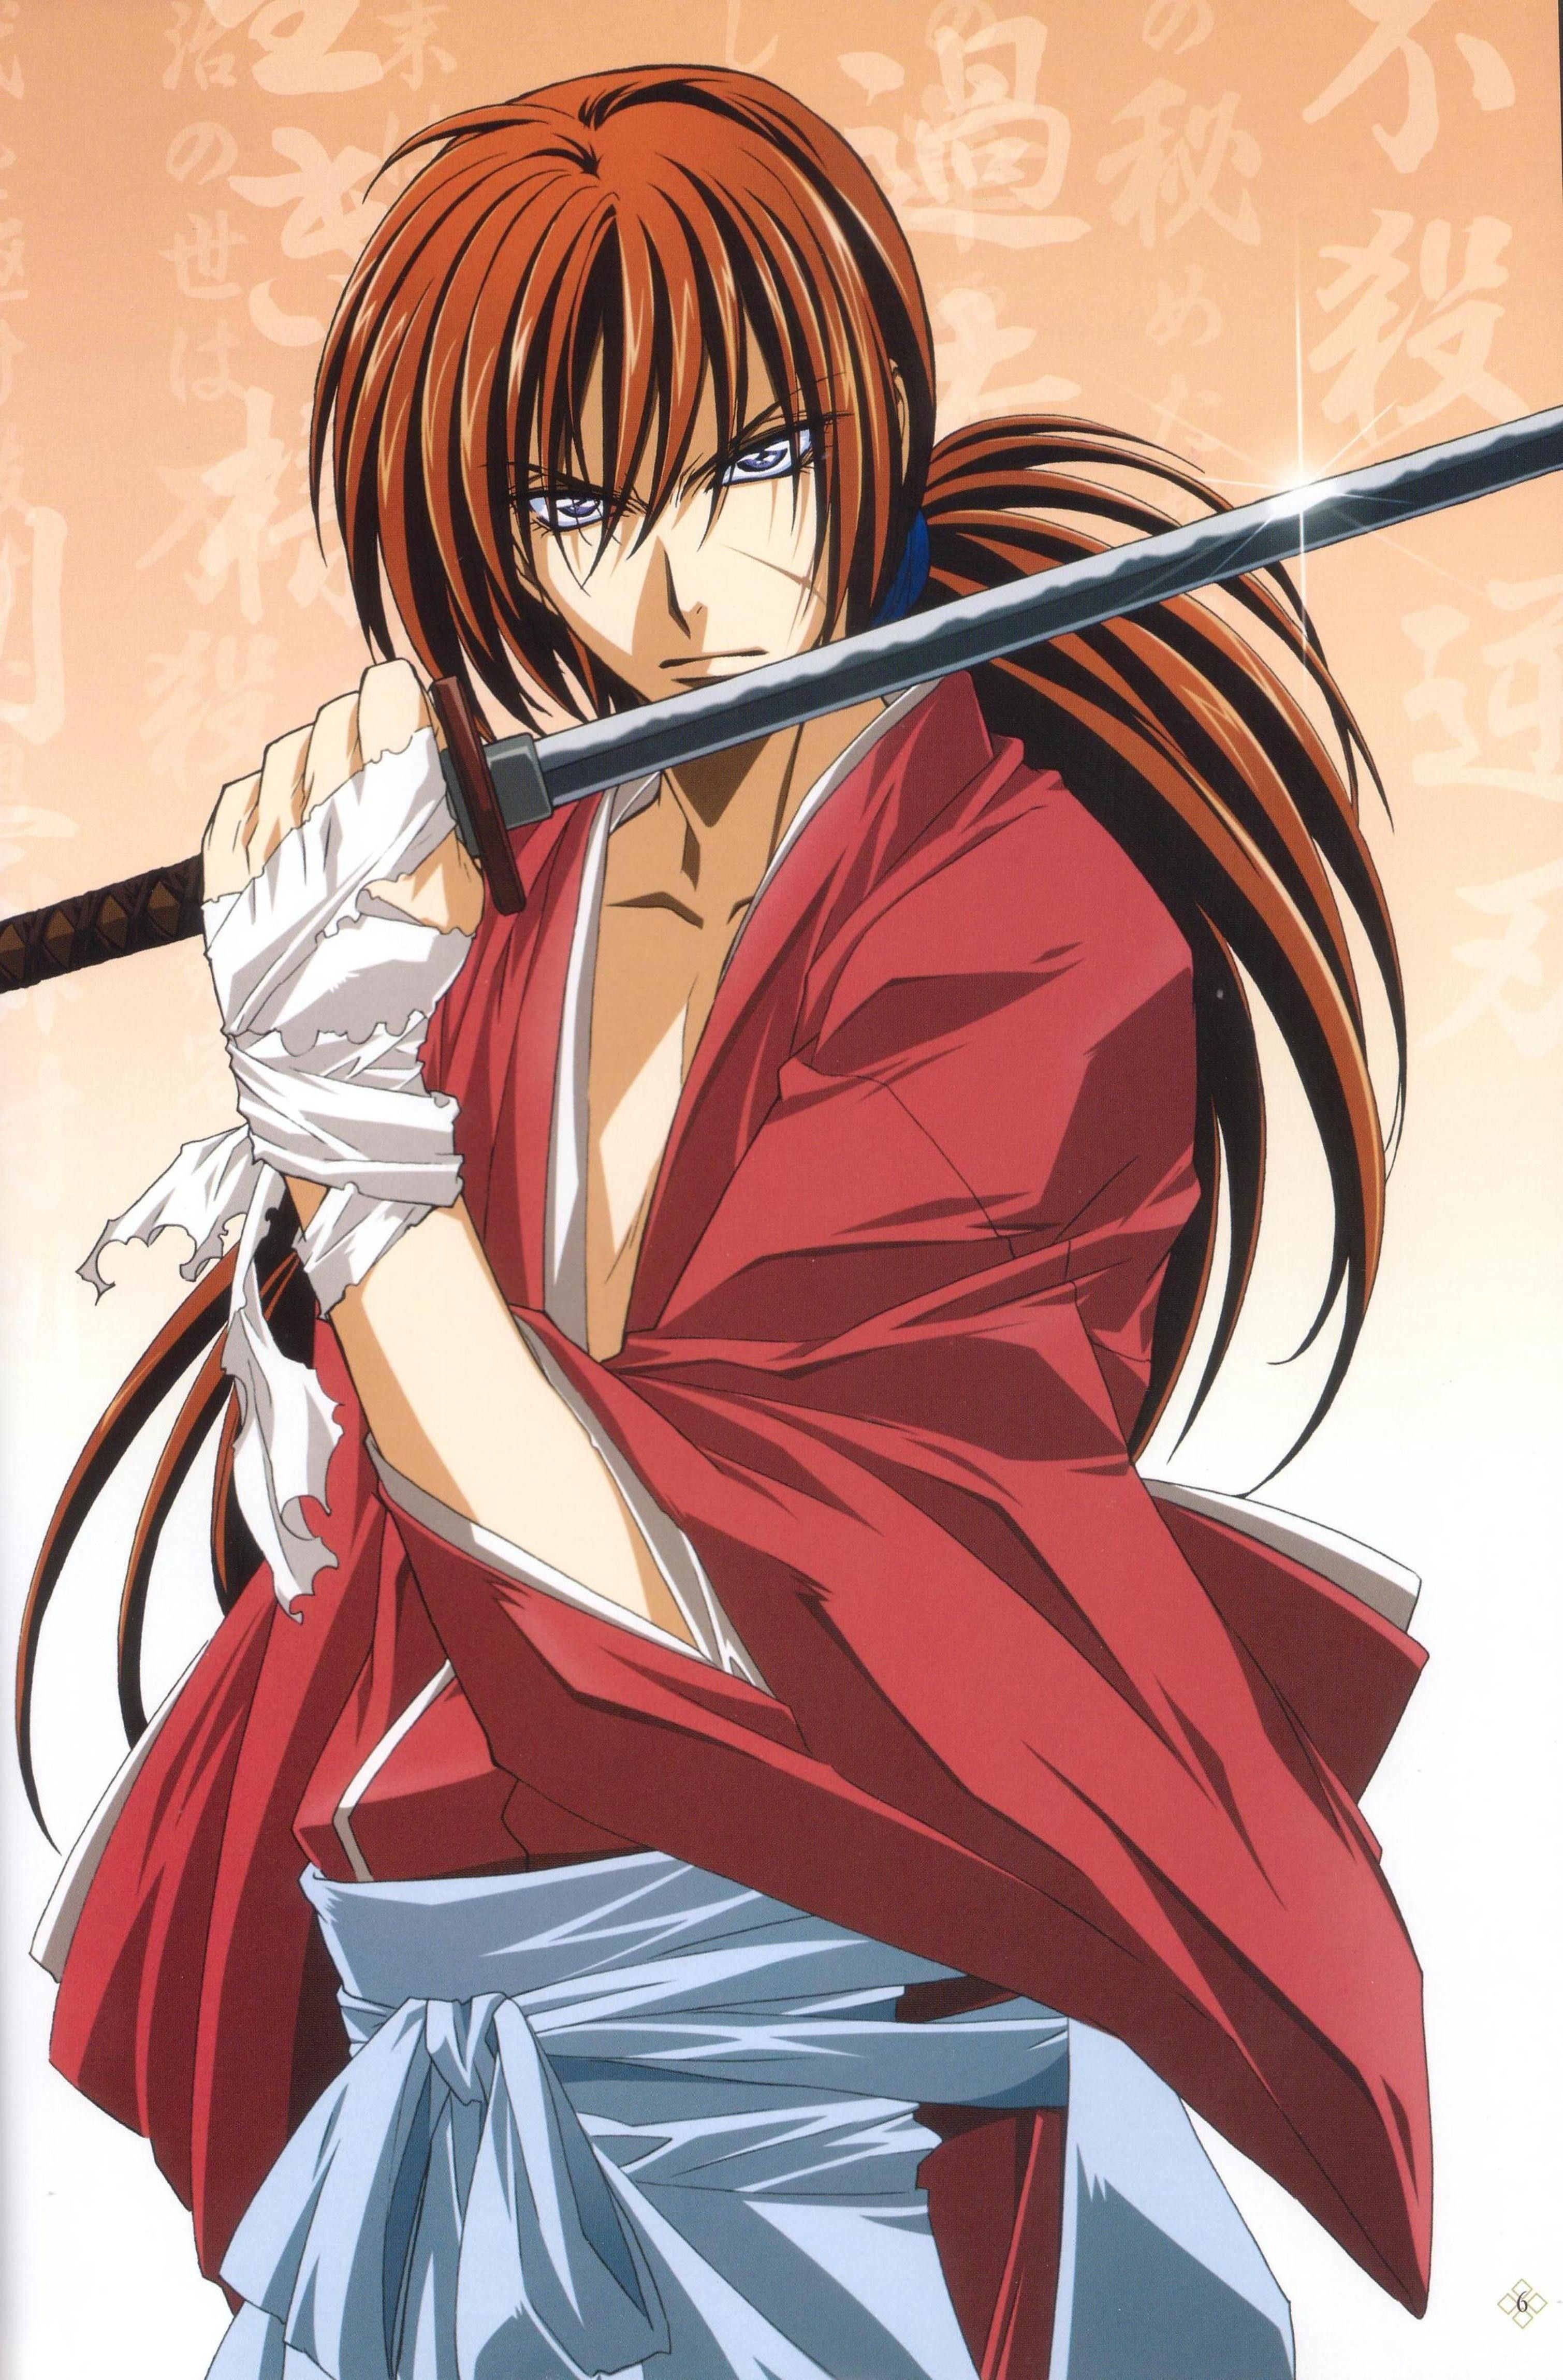 Rurouni Kenshin Iphone Wallpapers